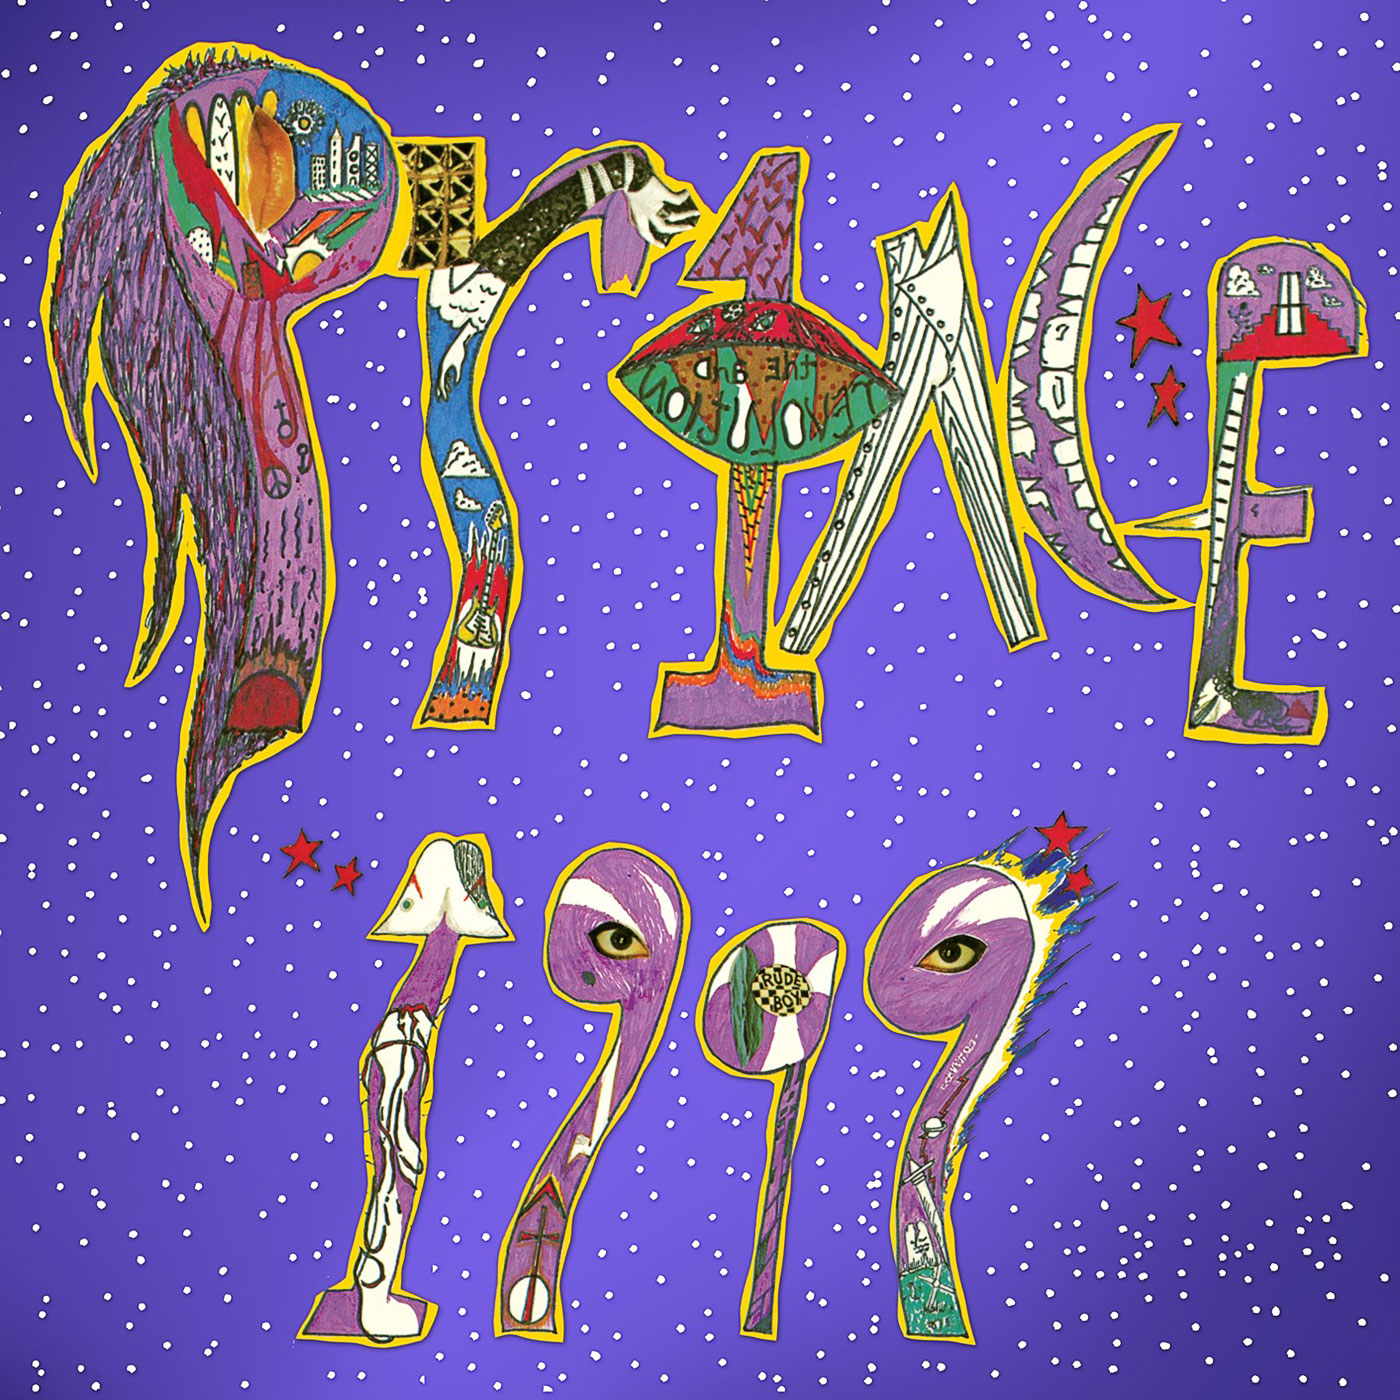 497 Prince – 1999